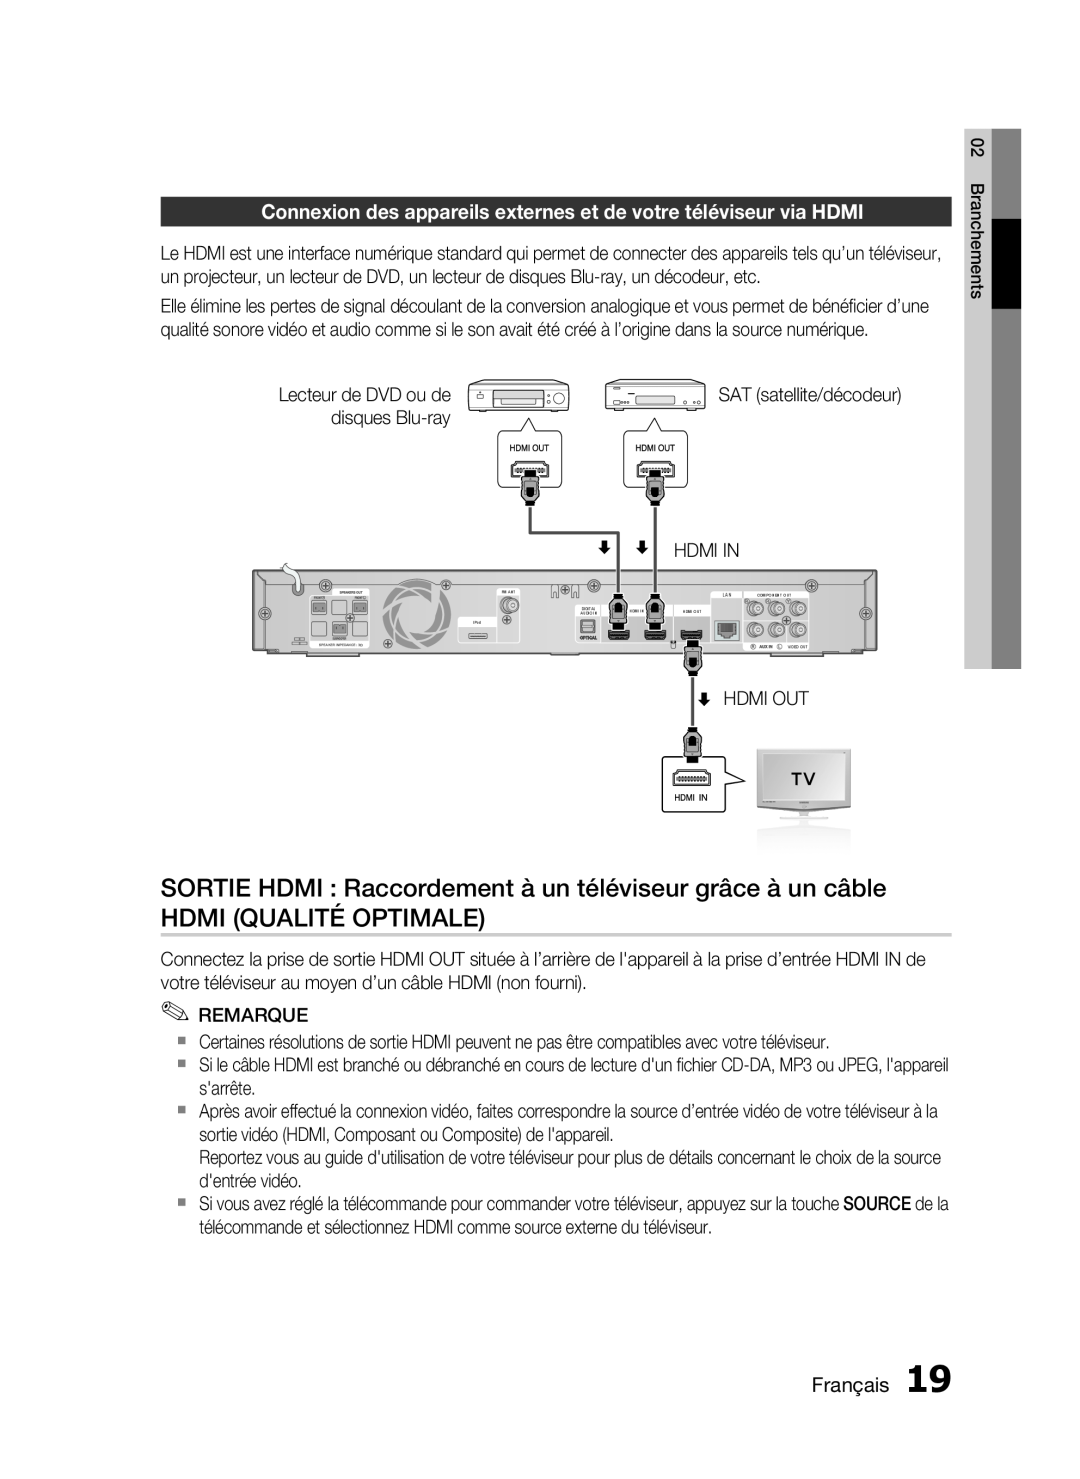 Samsung HT-C6200/XEF manual SORTIE HDMI Raccordement à un téléviseur grâce à un câble, Hdmi Qualité Optimale, Français 